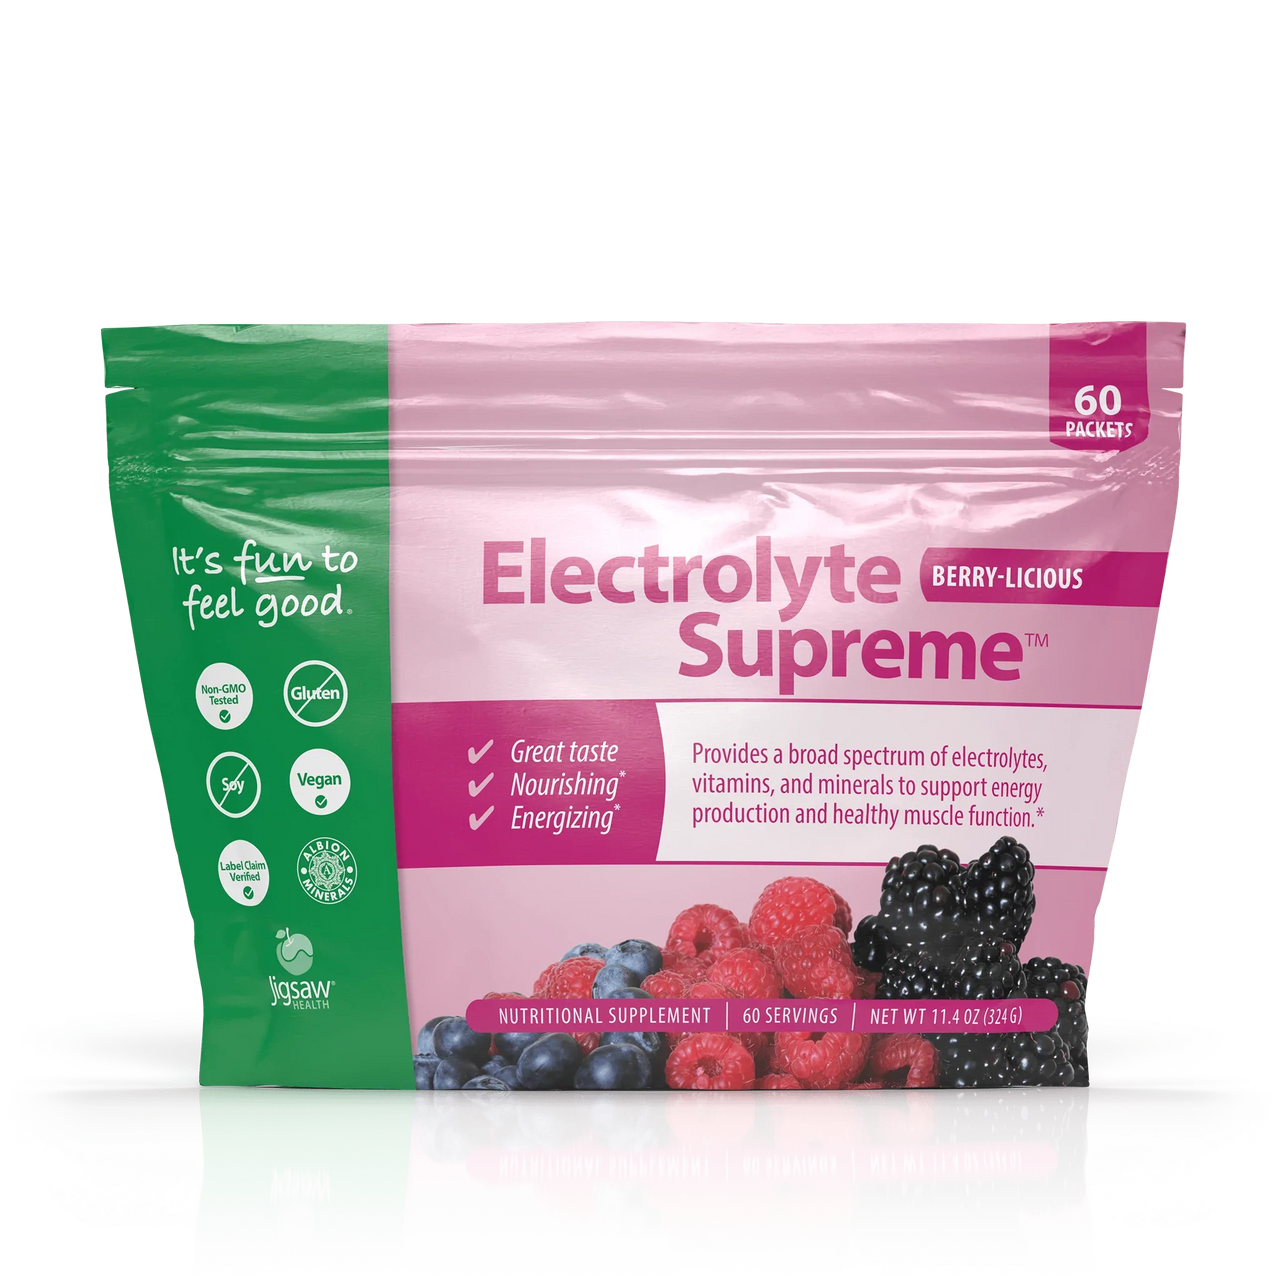 Jigsaw Electrolyte Supreme